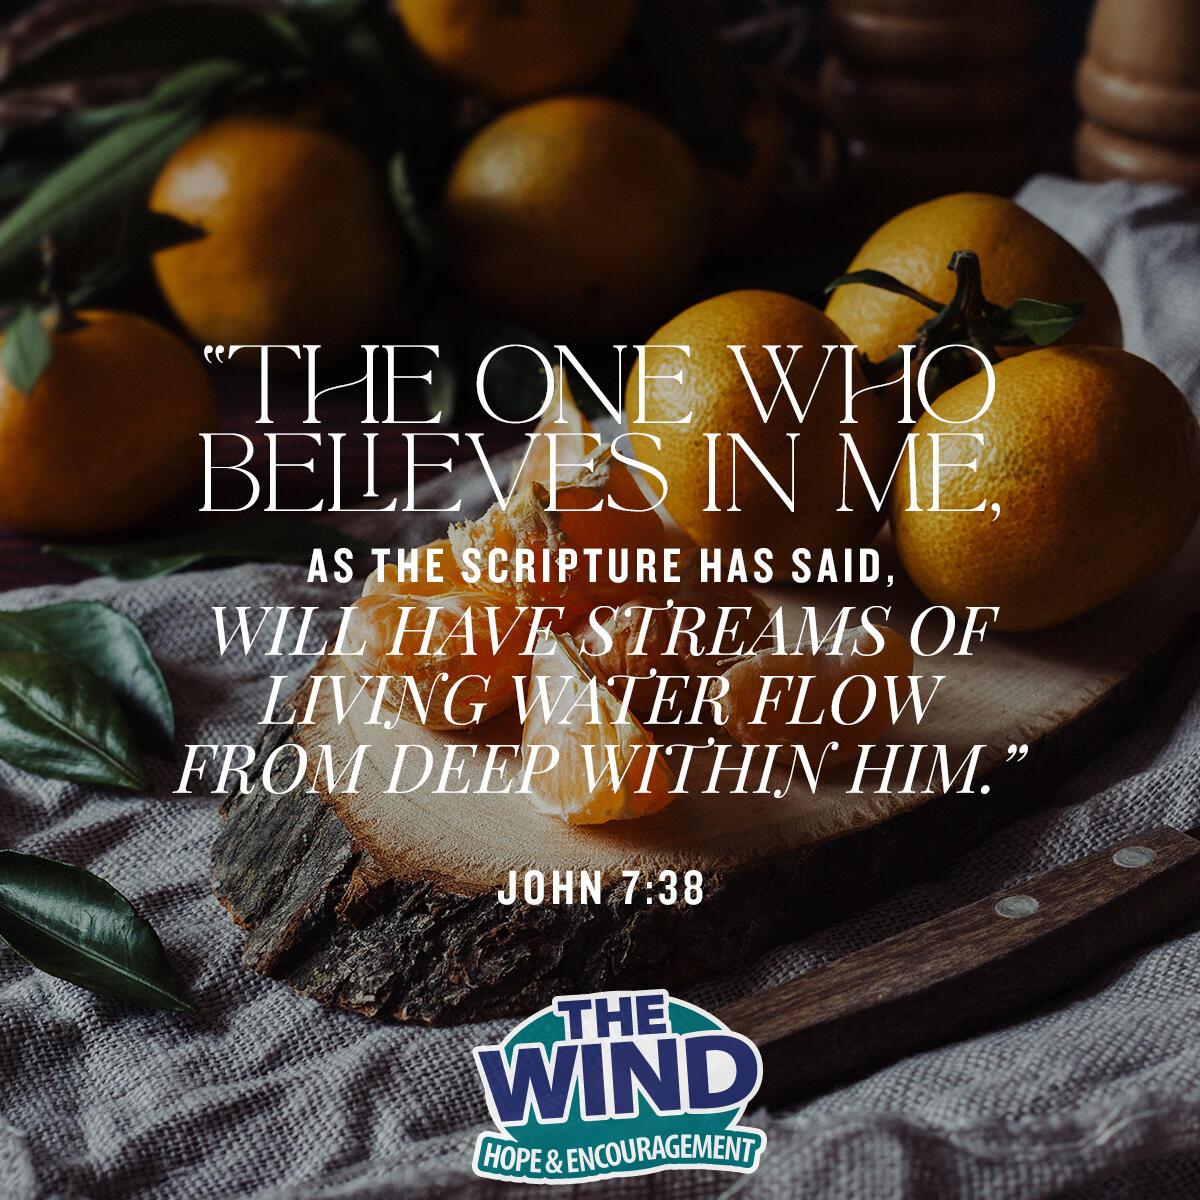 John 7:38